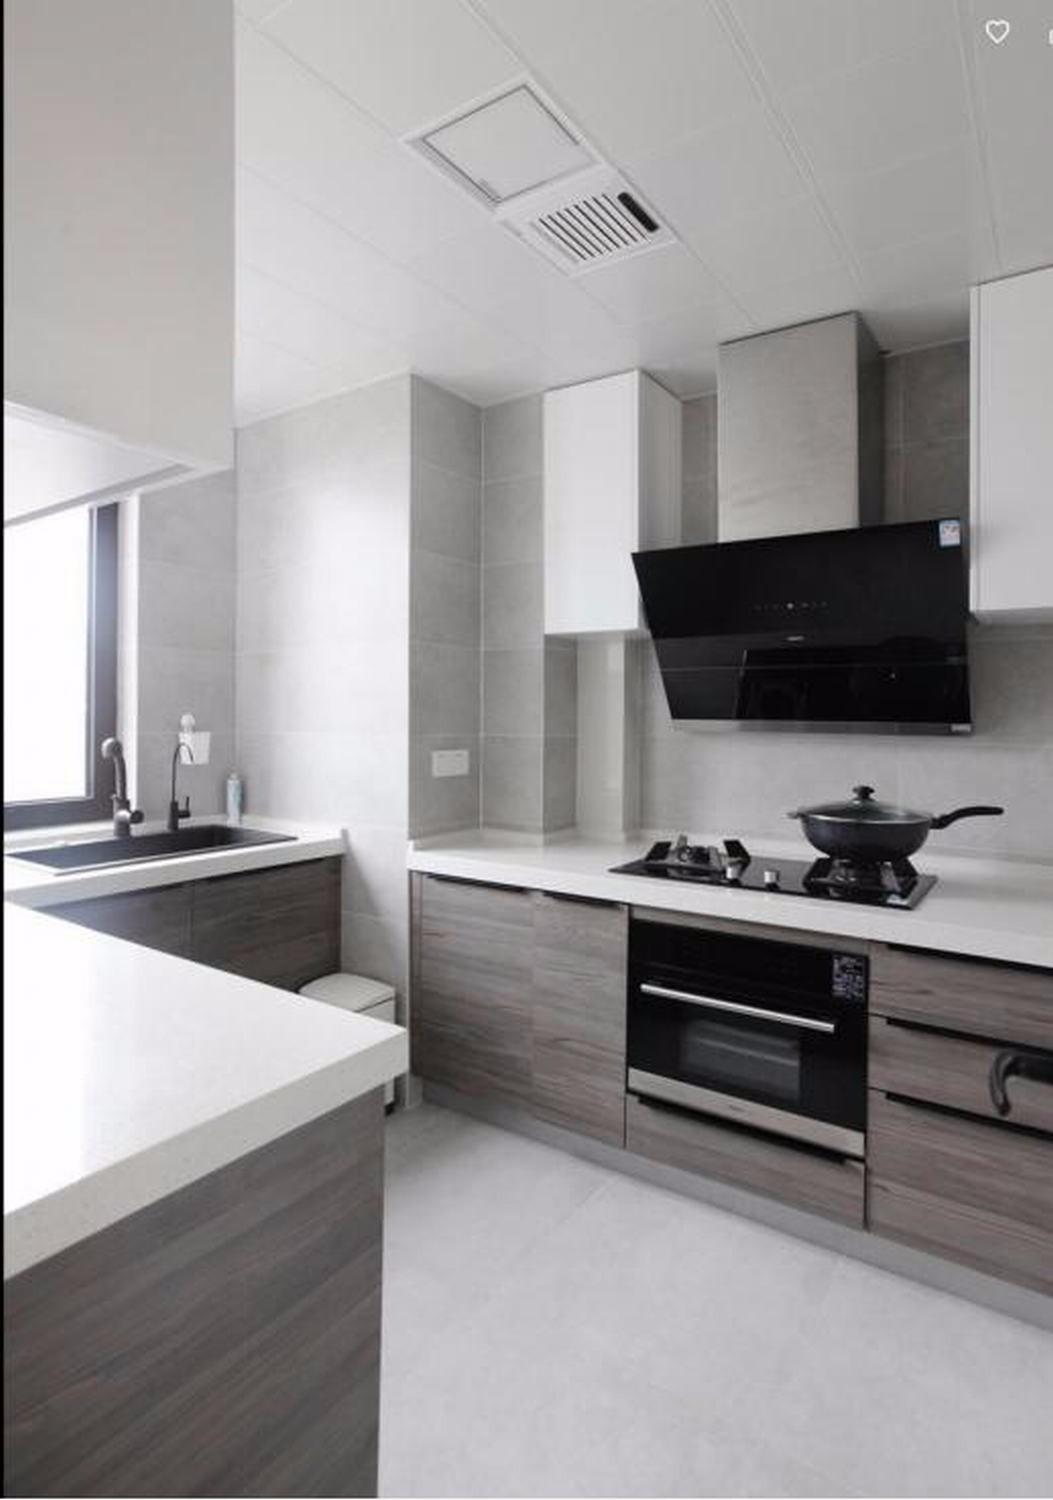 简约风室内设计厨房白色橱柜灶台效果图图片_装饰装修_建筑空间-图行天下素材网